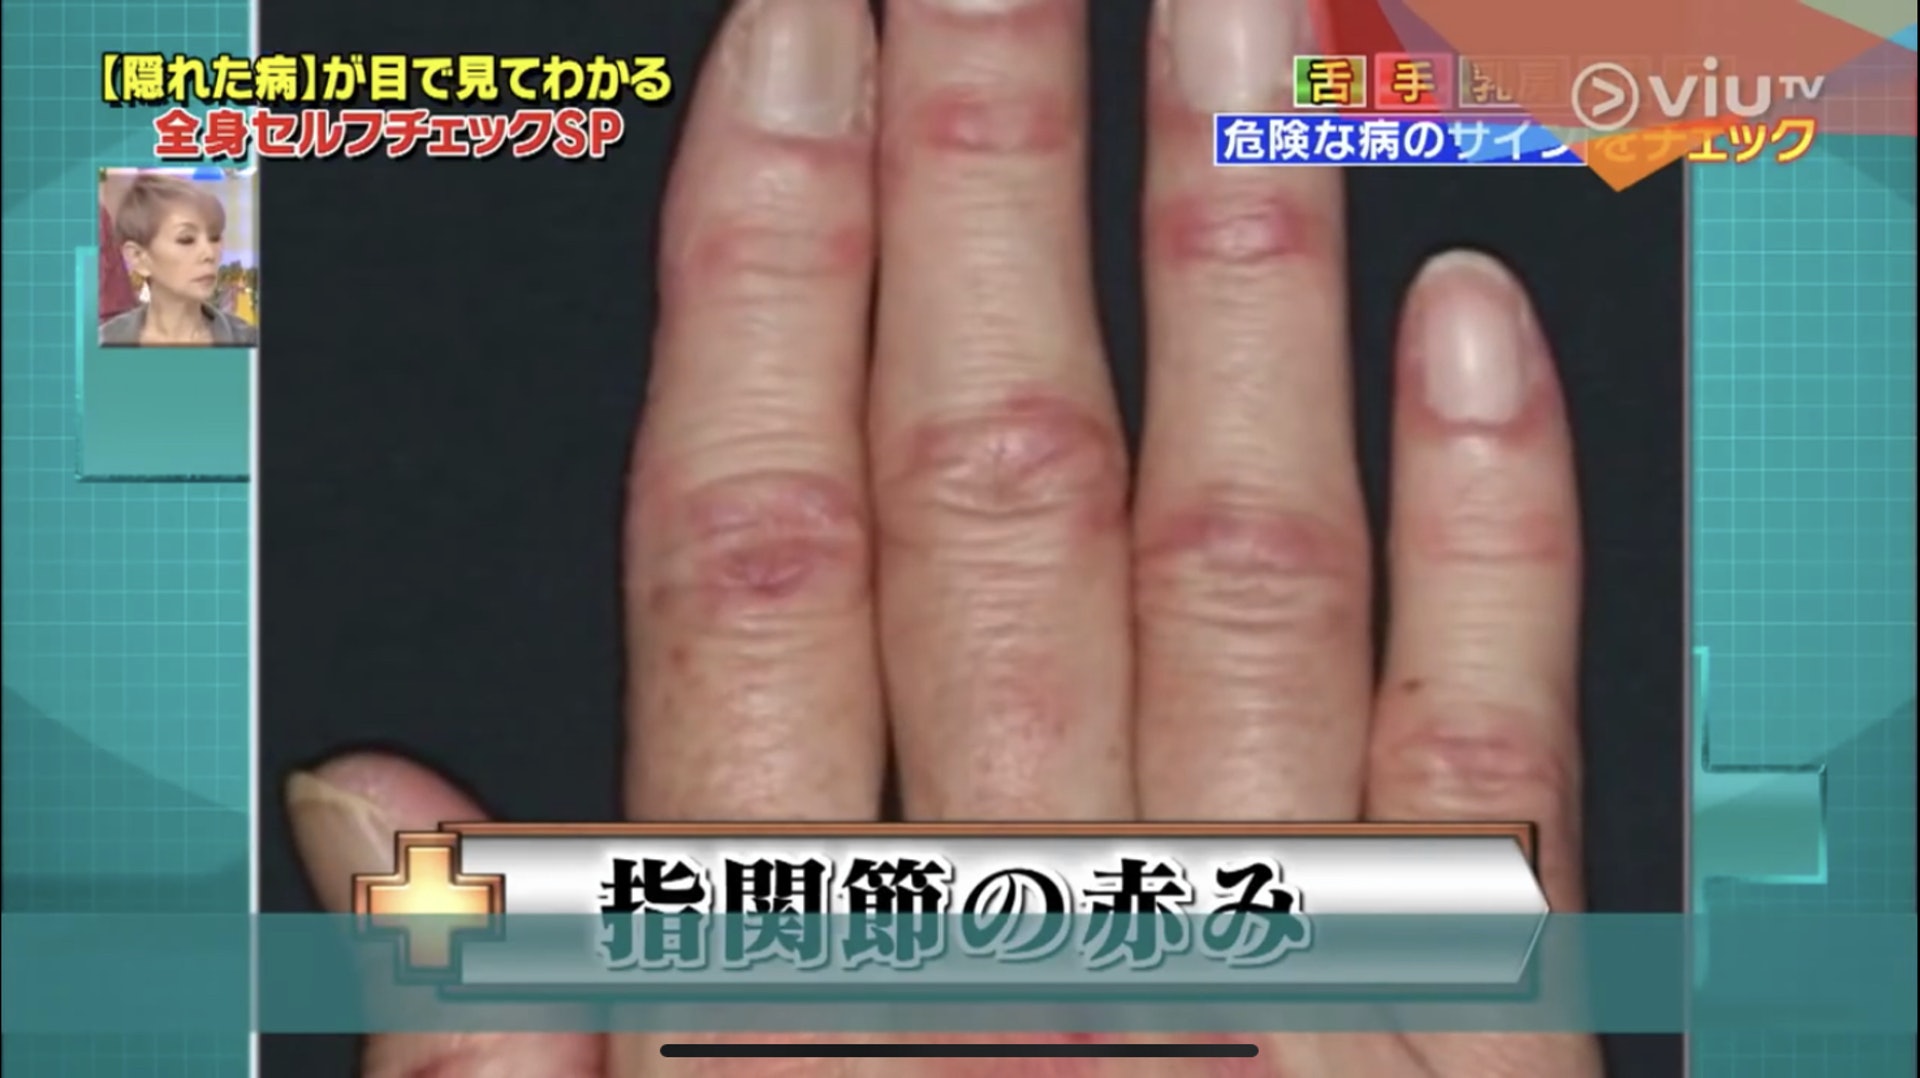 手指關節周圍發紅，還伴隨些腫脹，原來是皮肌炎的早期症狀。（Viu TV《恐怖醫學》影片截圖）